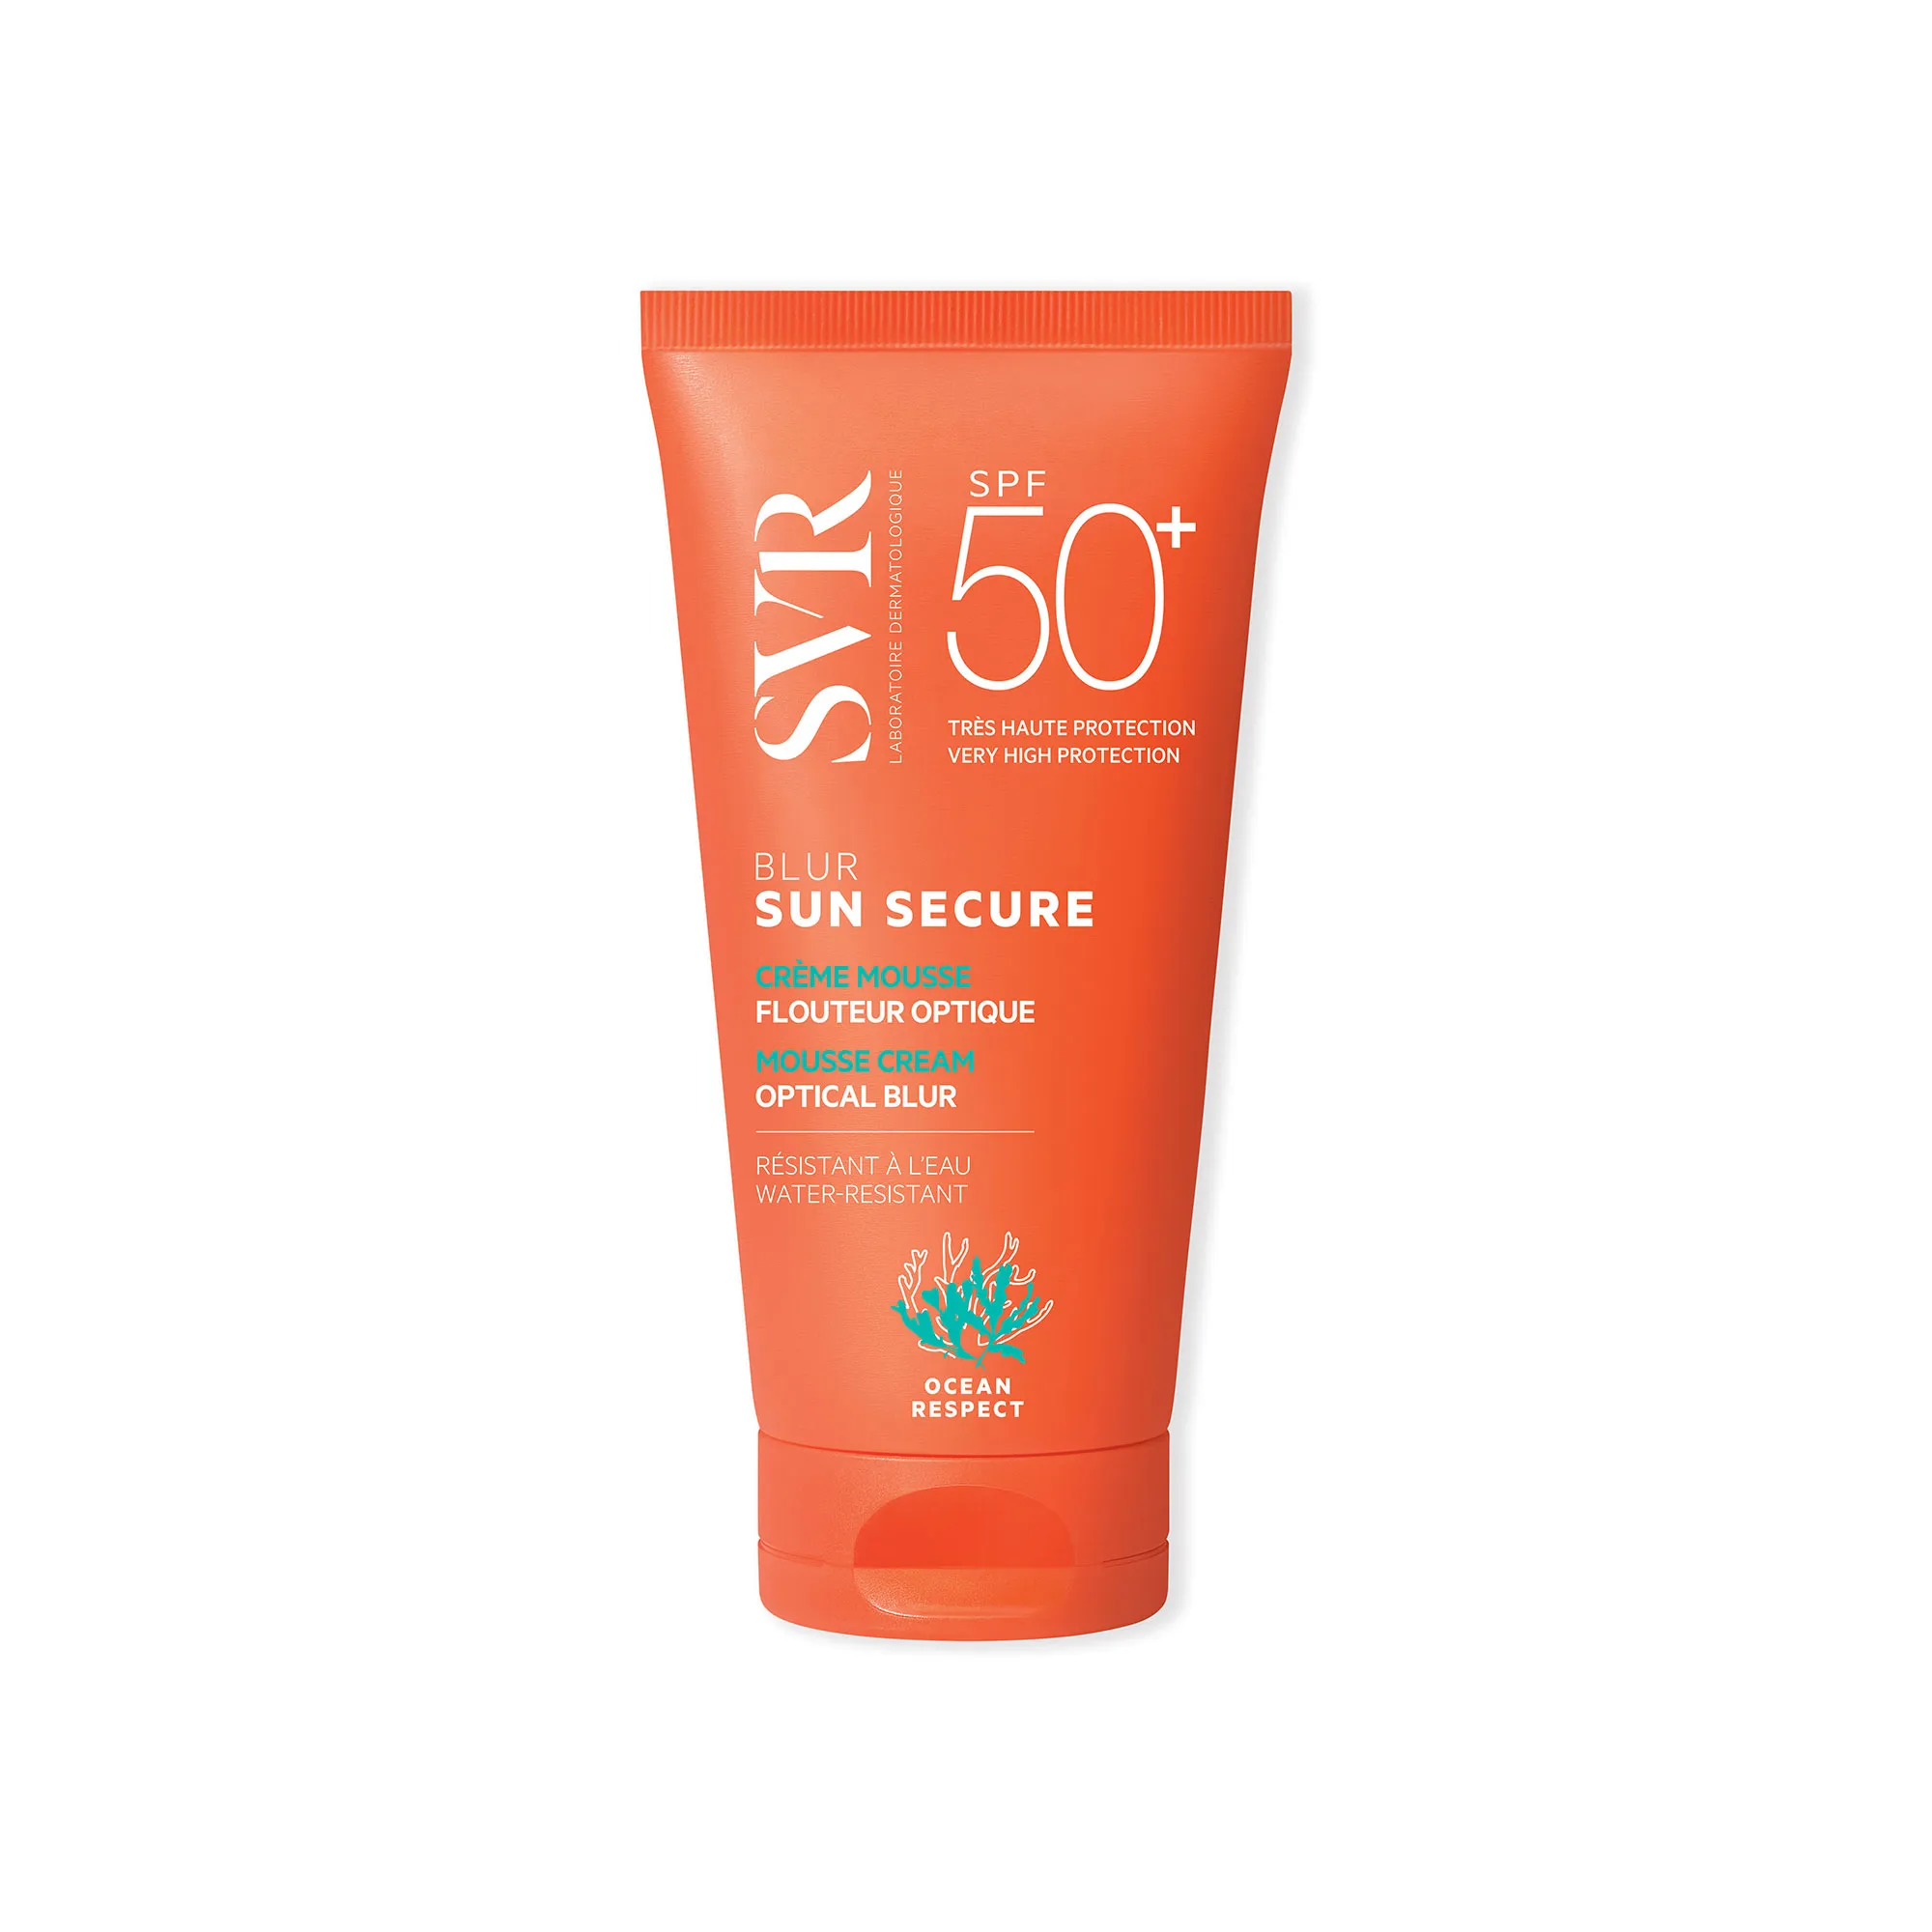 SVR Sun Secure Blur SPF 50+, nawilżający, kremowy mus ochronny, 50 ml